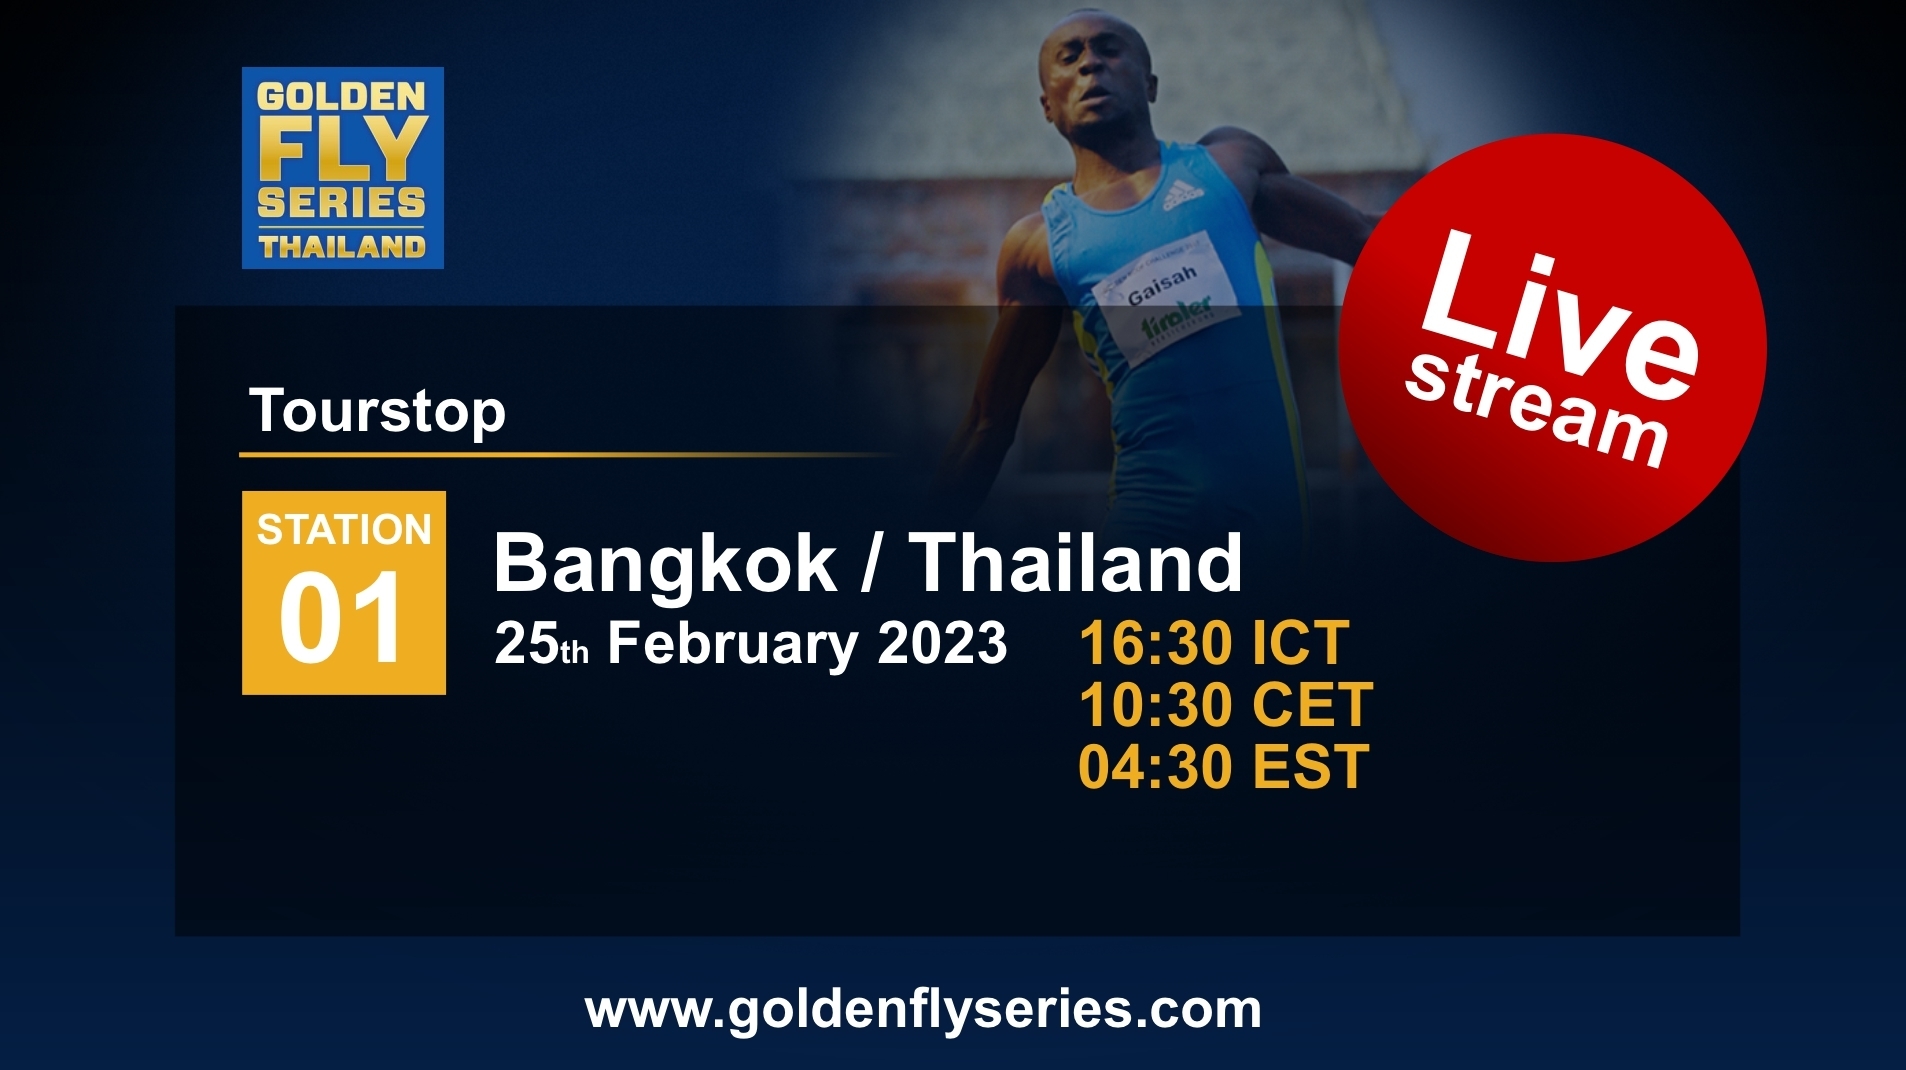 Golden Fly Series - Bangkok 2023 on Livestream